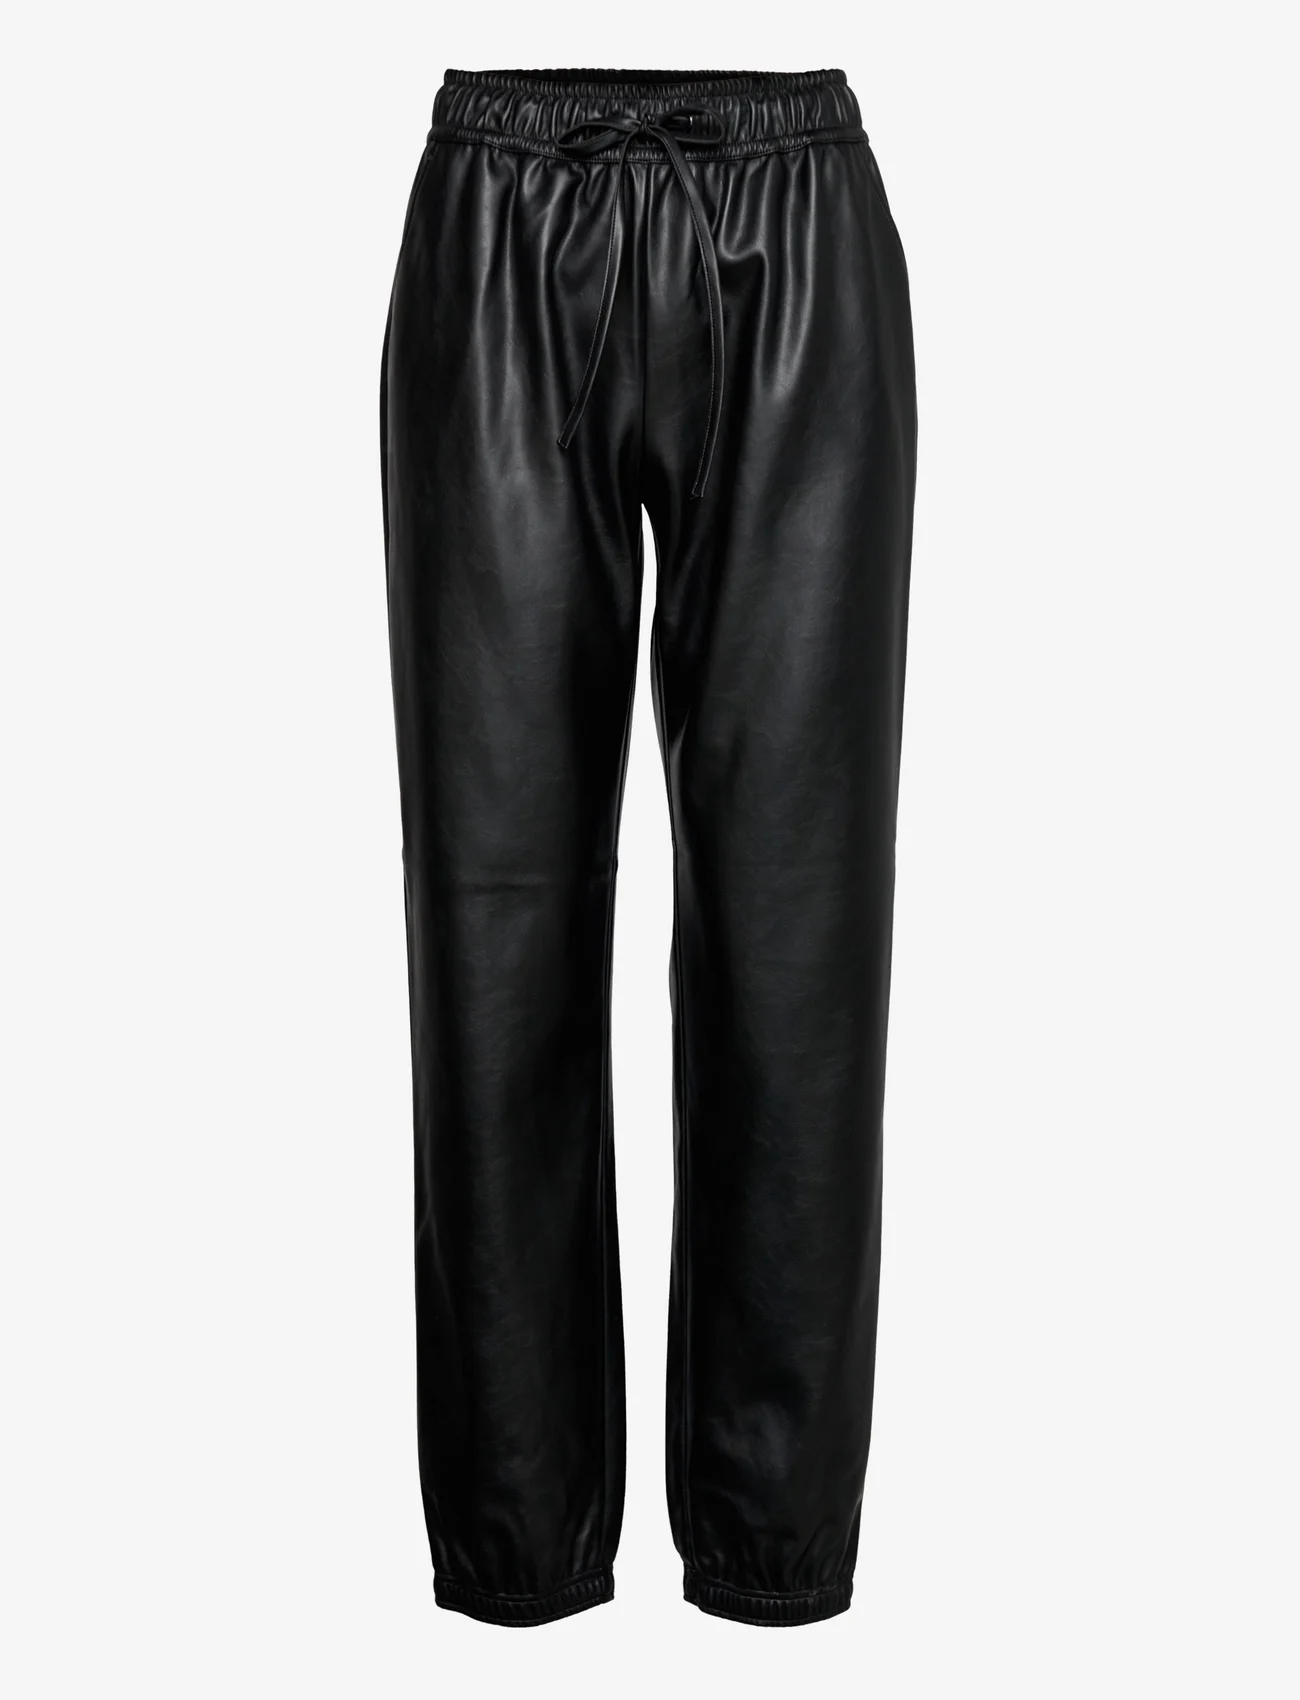 DESIGNERS, REMIX - Marie Trousers - festkläder till outletpriser - black - 0